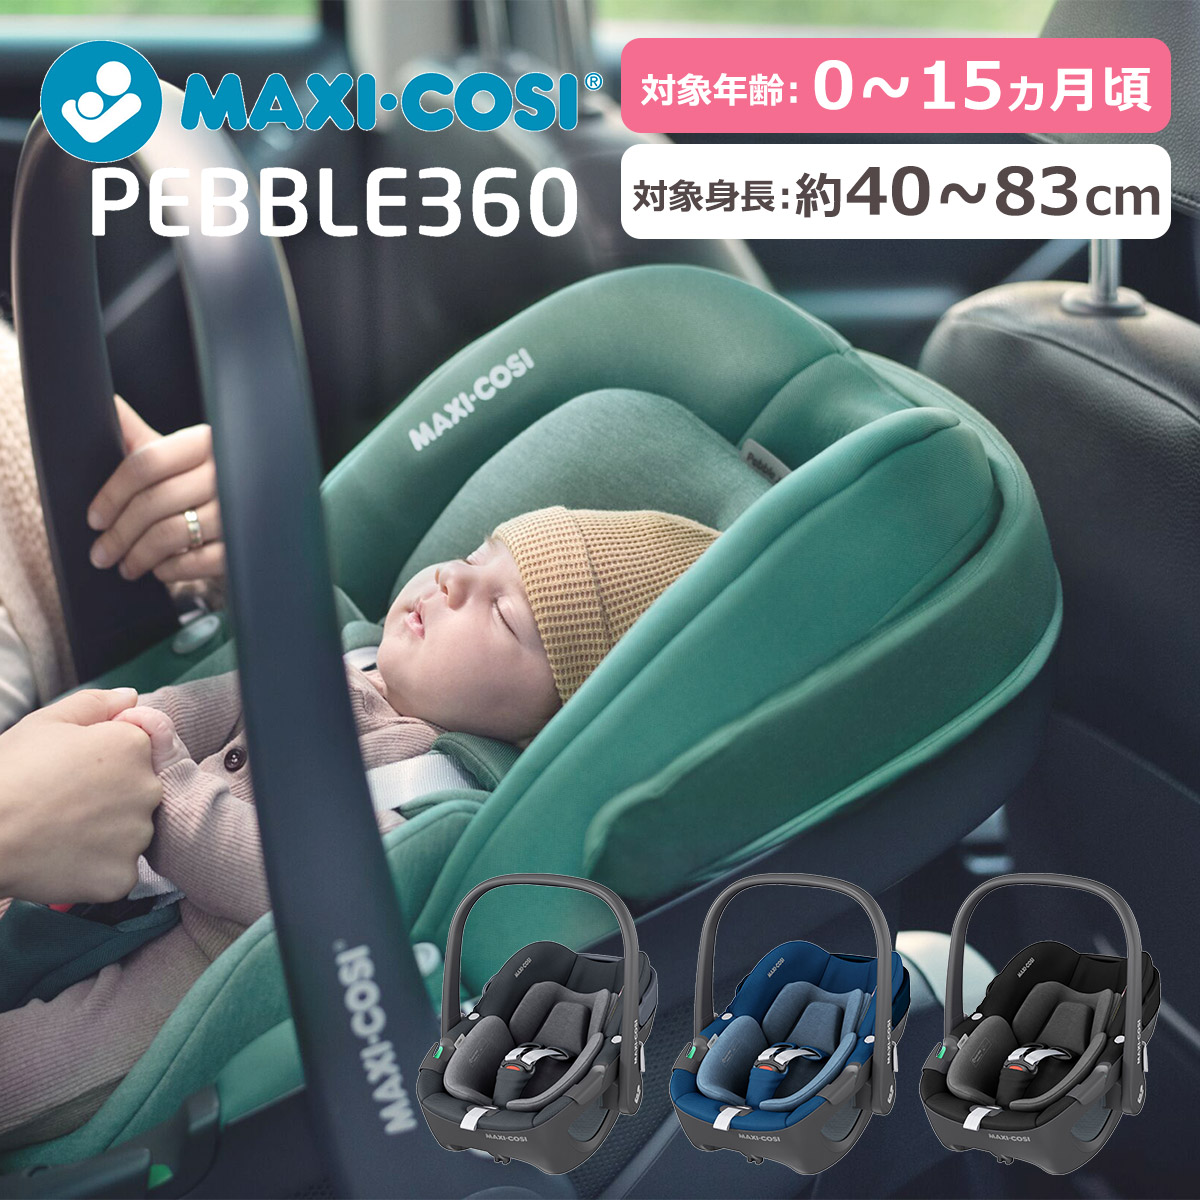 ベビーチェア ペブル360 ベビーシート カーシート マキシコシ MaxiCosi Pebble 360